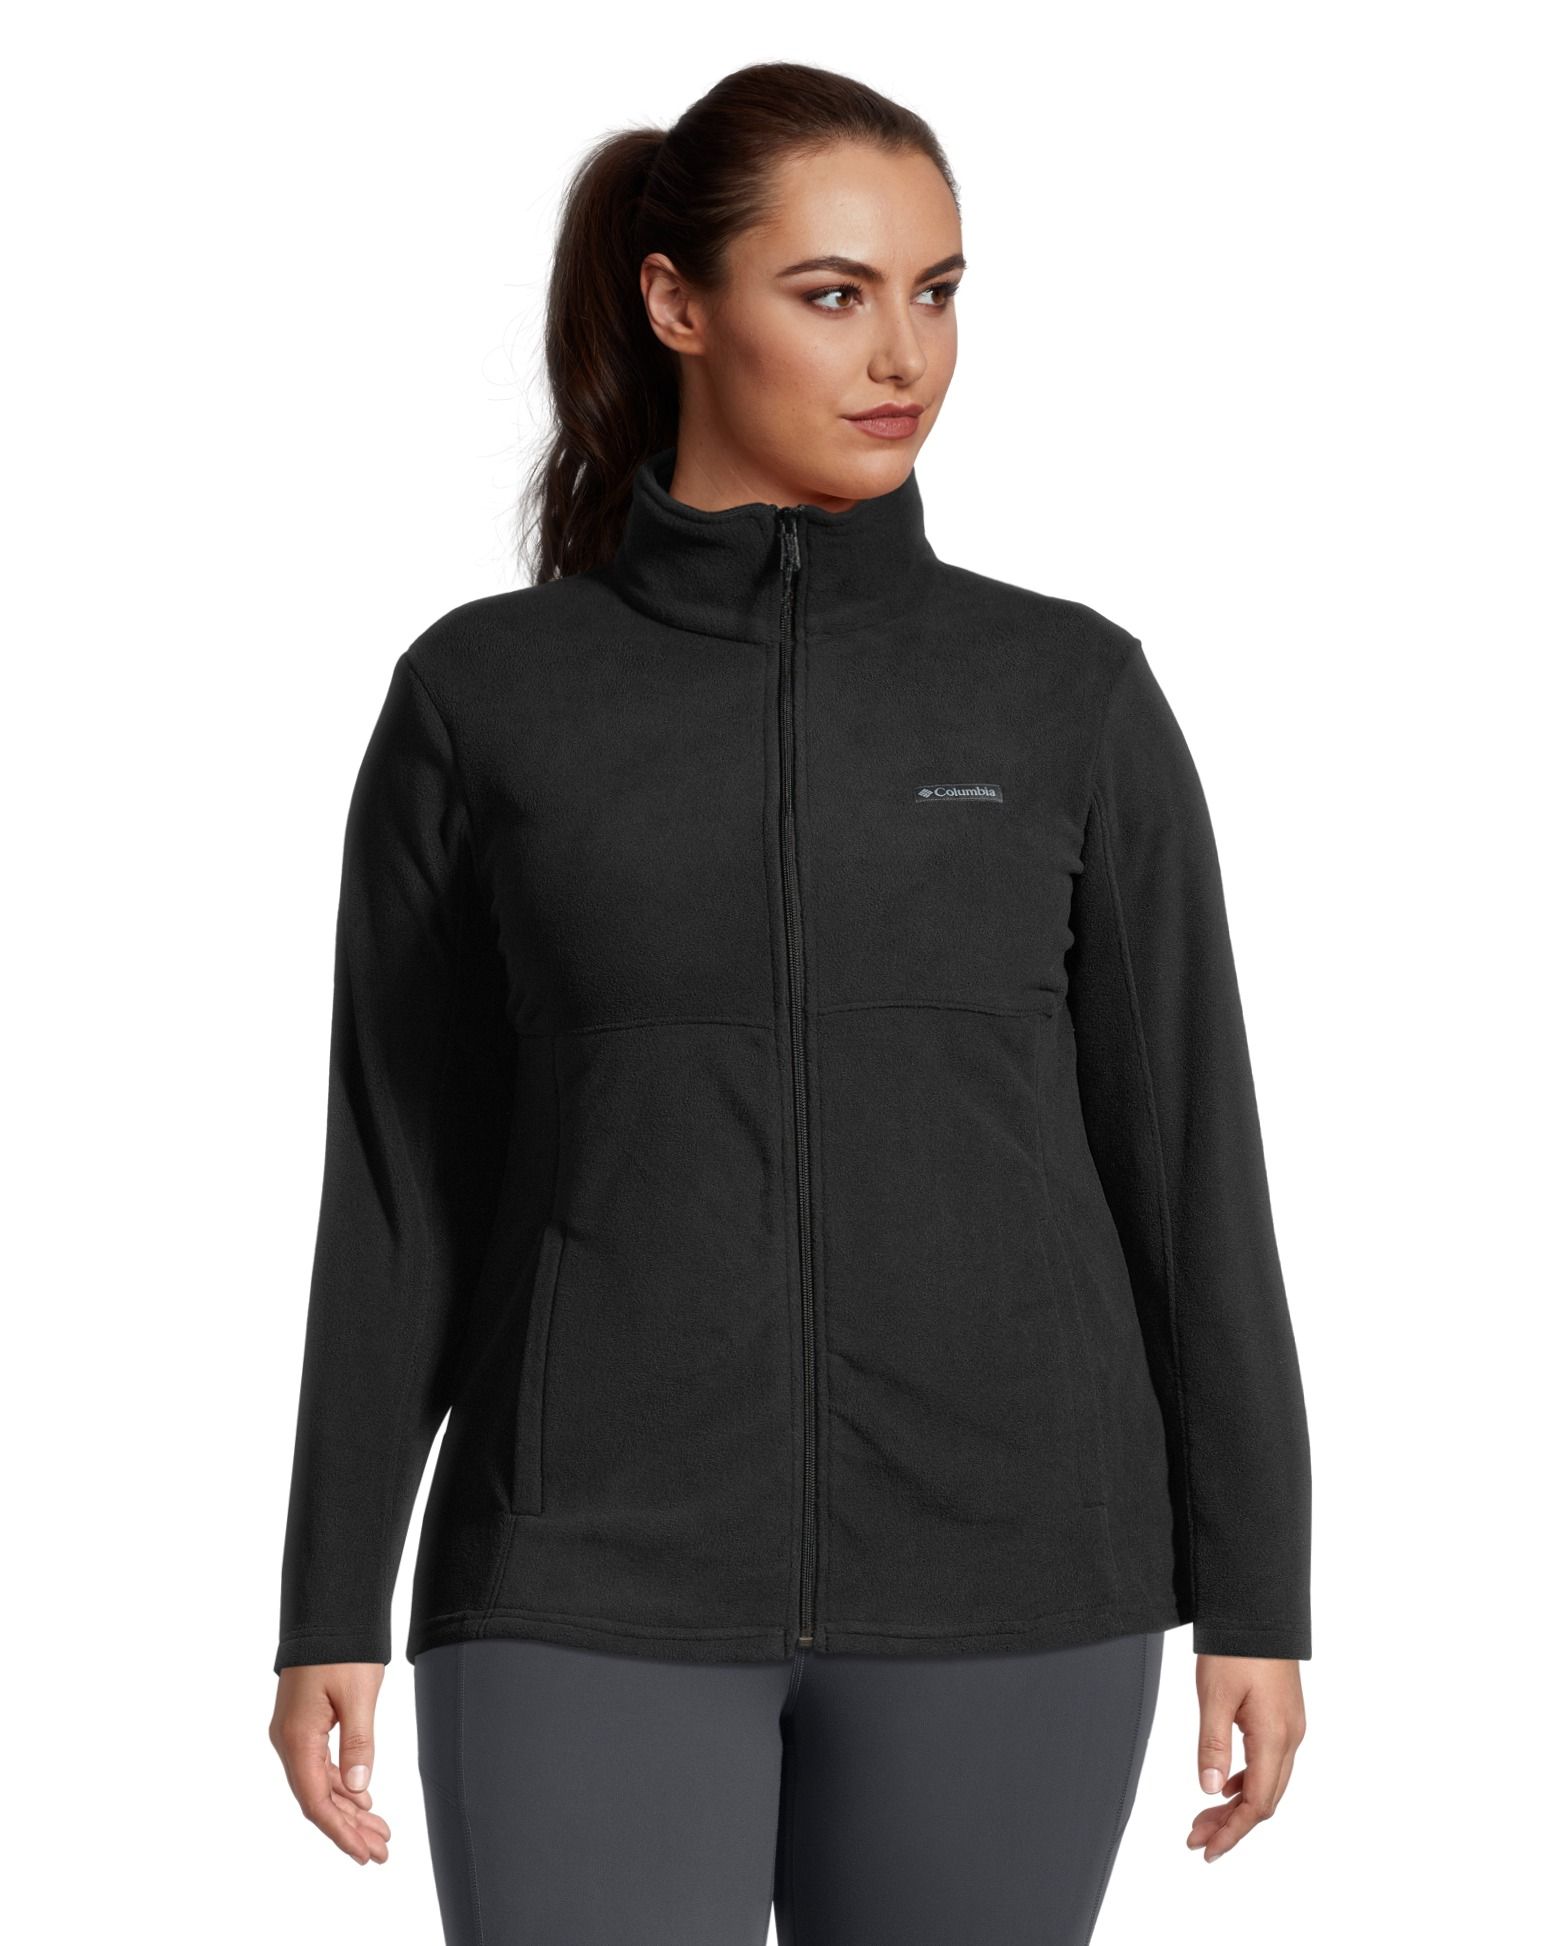 Women's Basin Trail III Full Zip Fleece Jacket